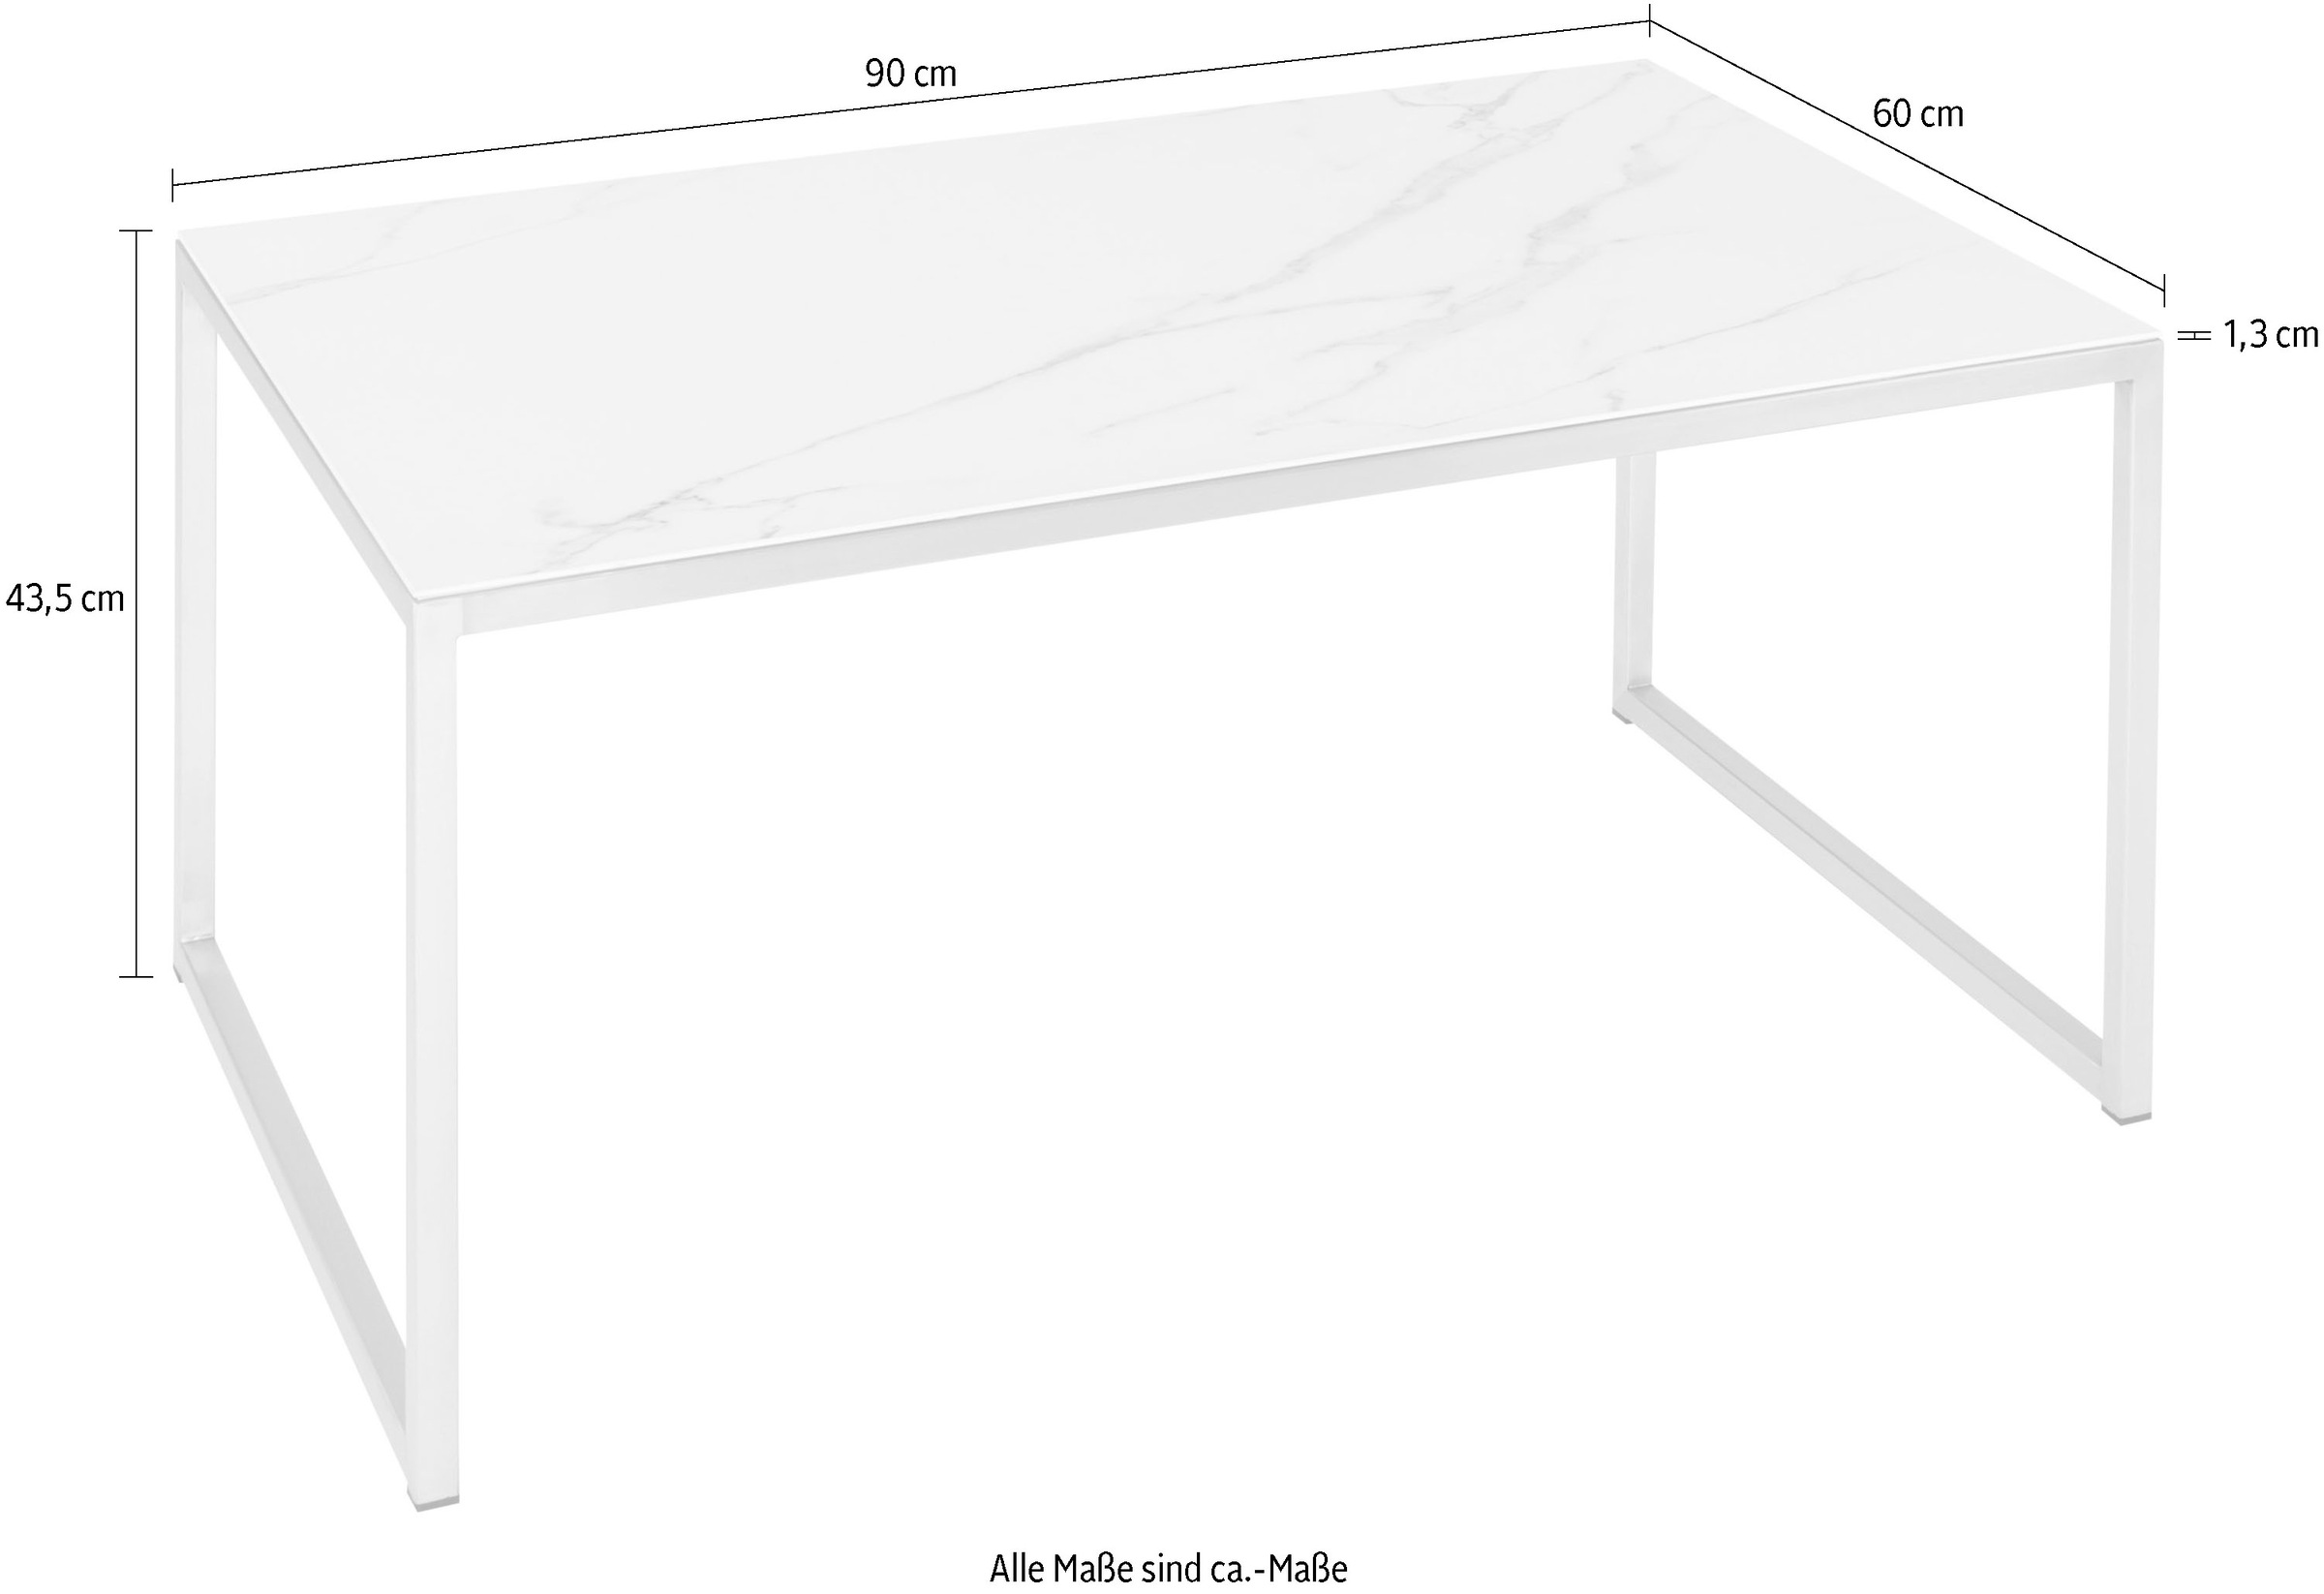 Henke Möbel Couchtisch, Tischplatte der Tisch Unikat kaufen online Musterung ein Keramik, in aus jeder